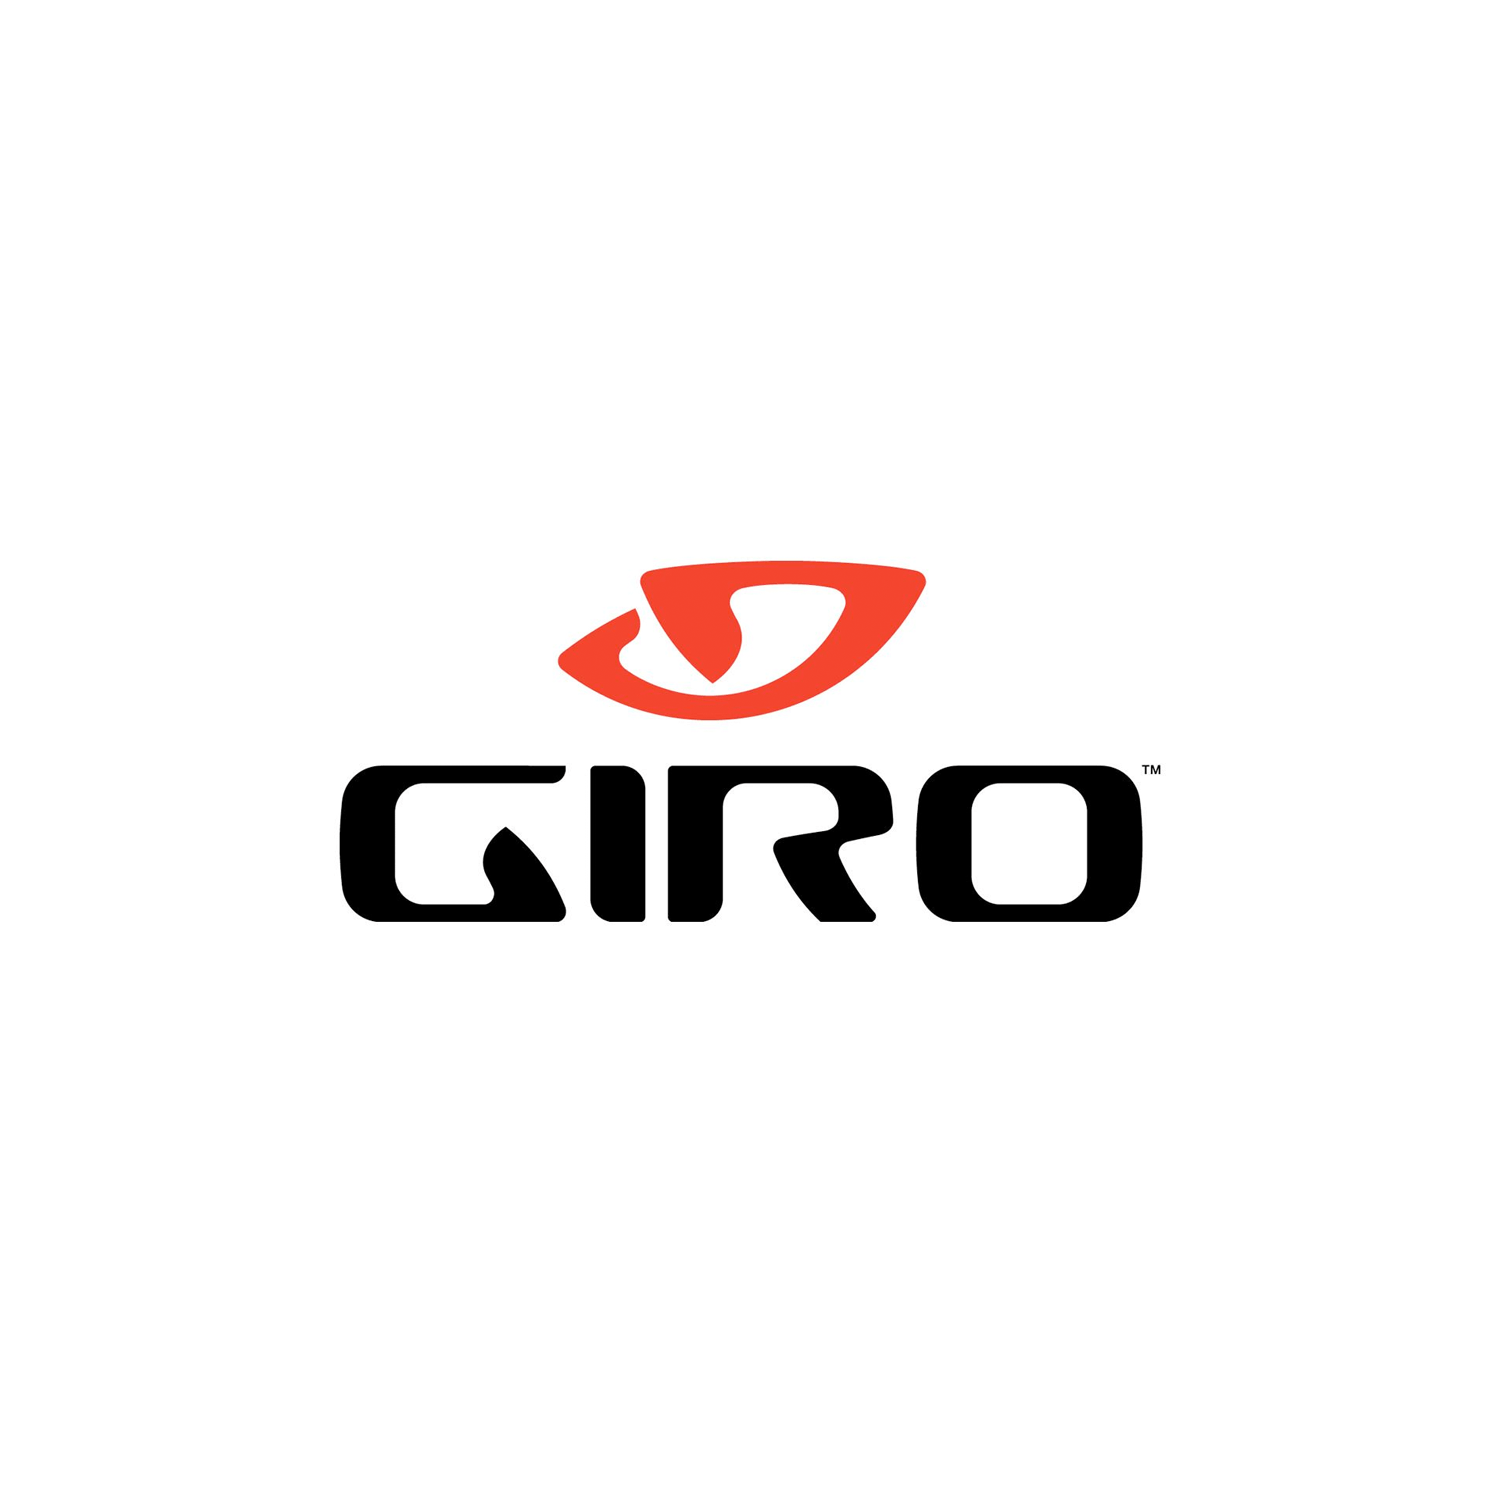 Giro